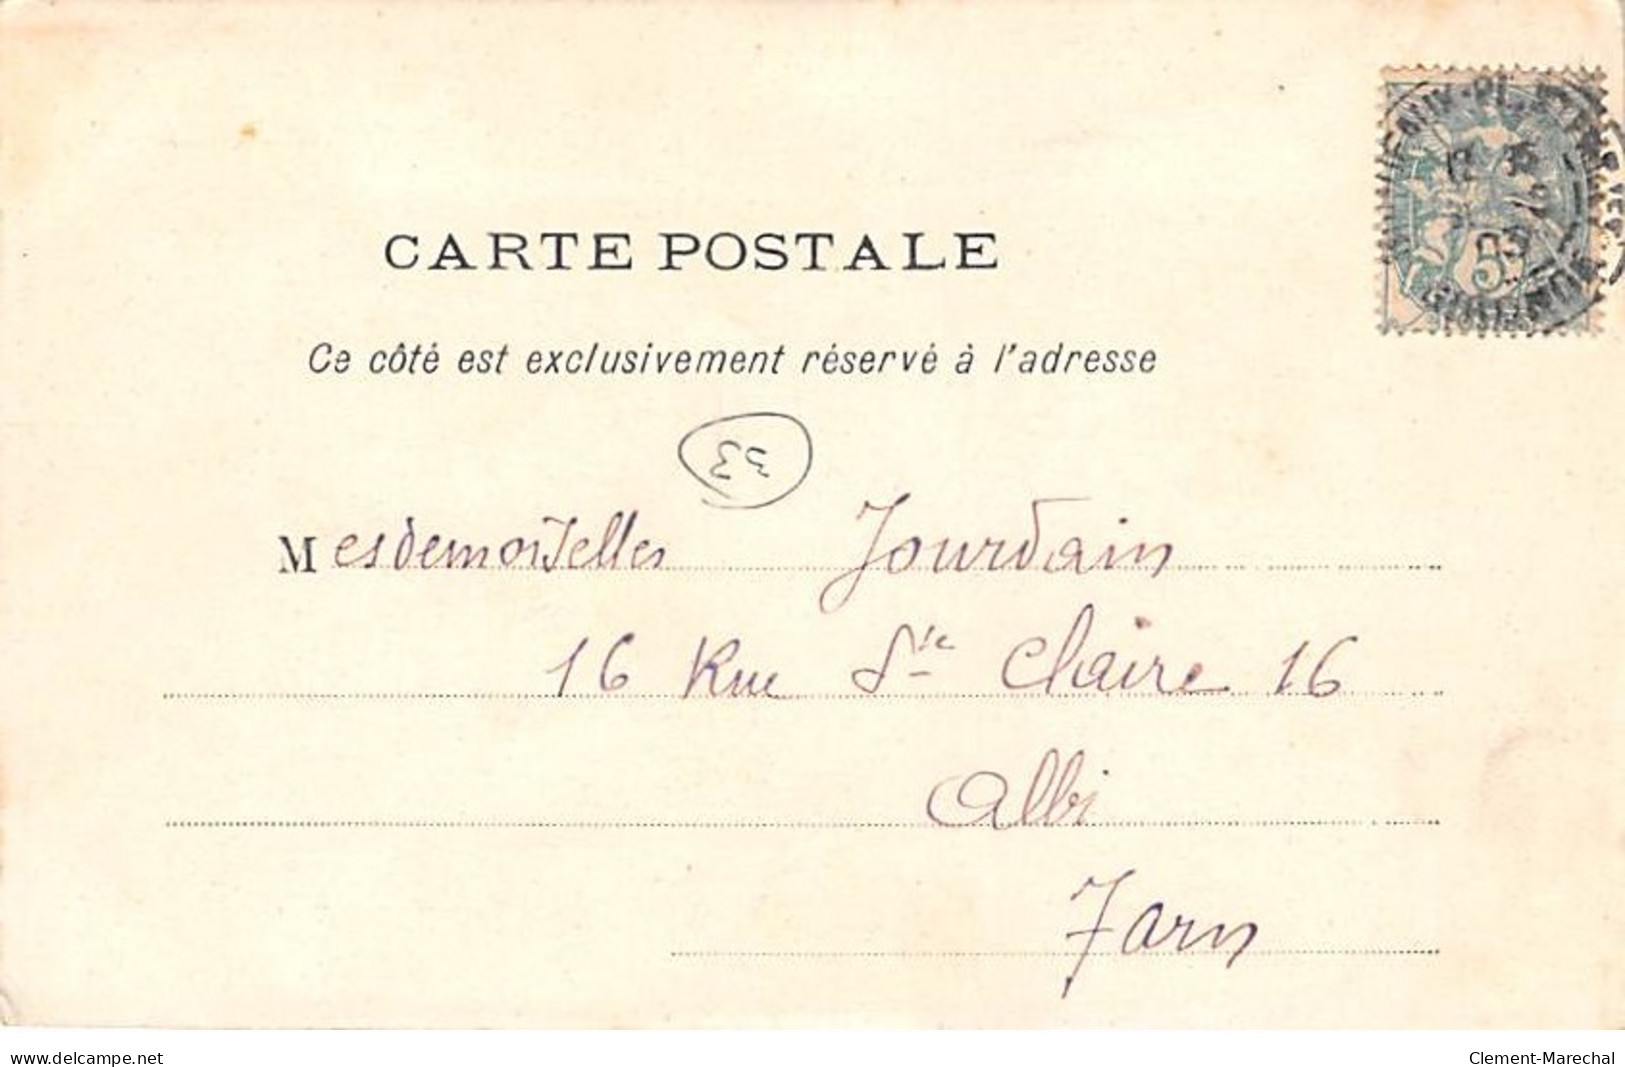 BORDEAUX - Le " Chili " échoué En Rade Le 24 Avril 1903 - Très Bon état - Bordeaux